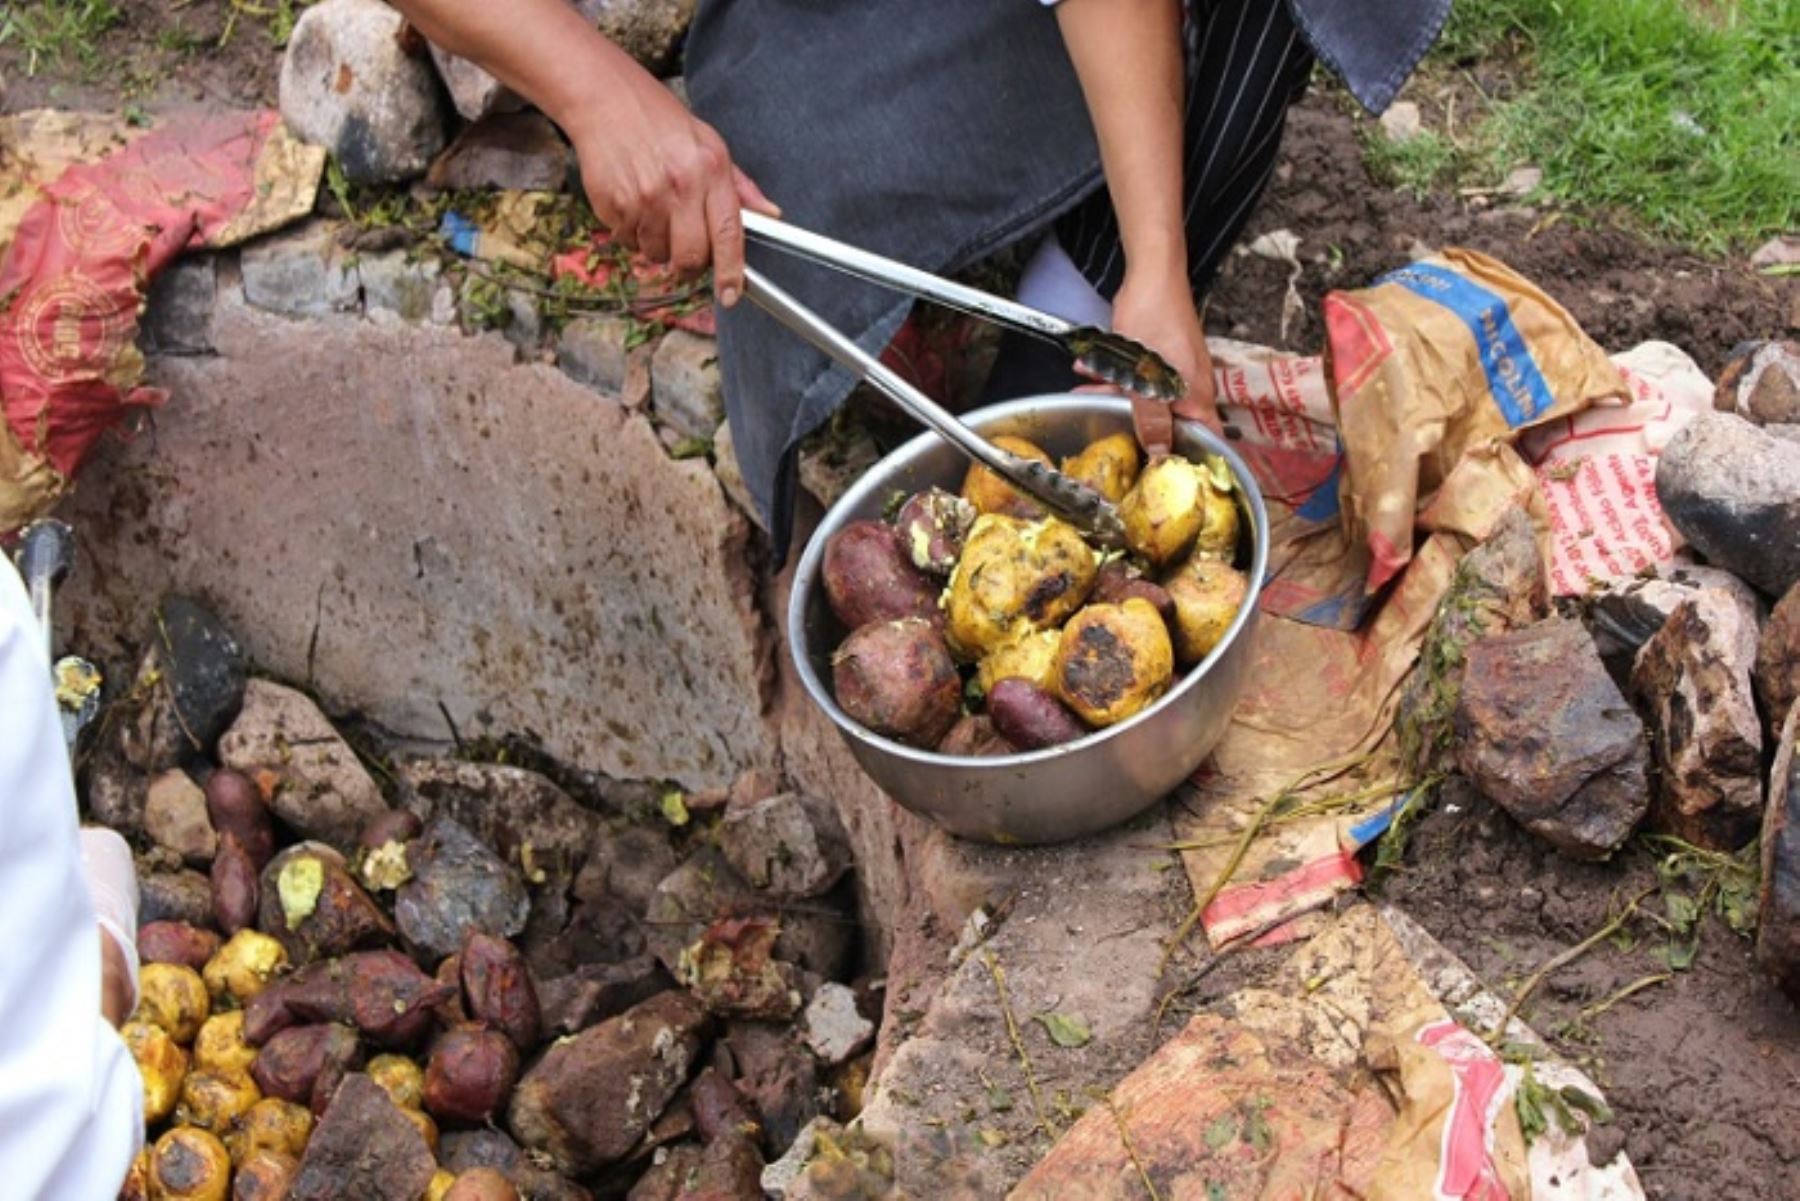 La Pachamanca mezcla carnes, hierbas aromáticas, leguminosas y tubérculos cocinados bajo tierra, en un horno enterrado con rocas calientes. La cocción que se realiza con los diversos alimentos es saludable y permite la conservación de nutrientes